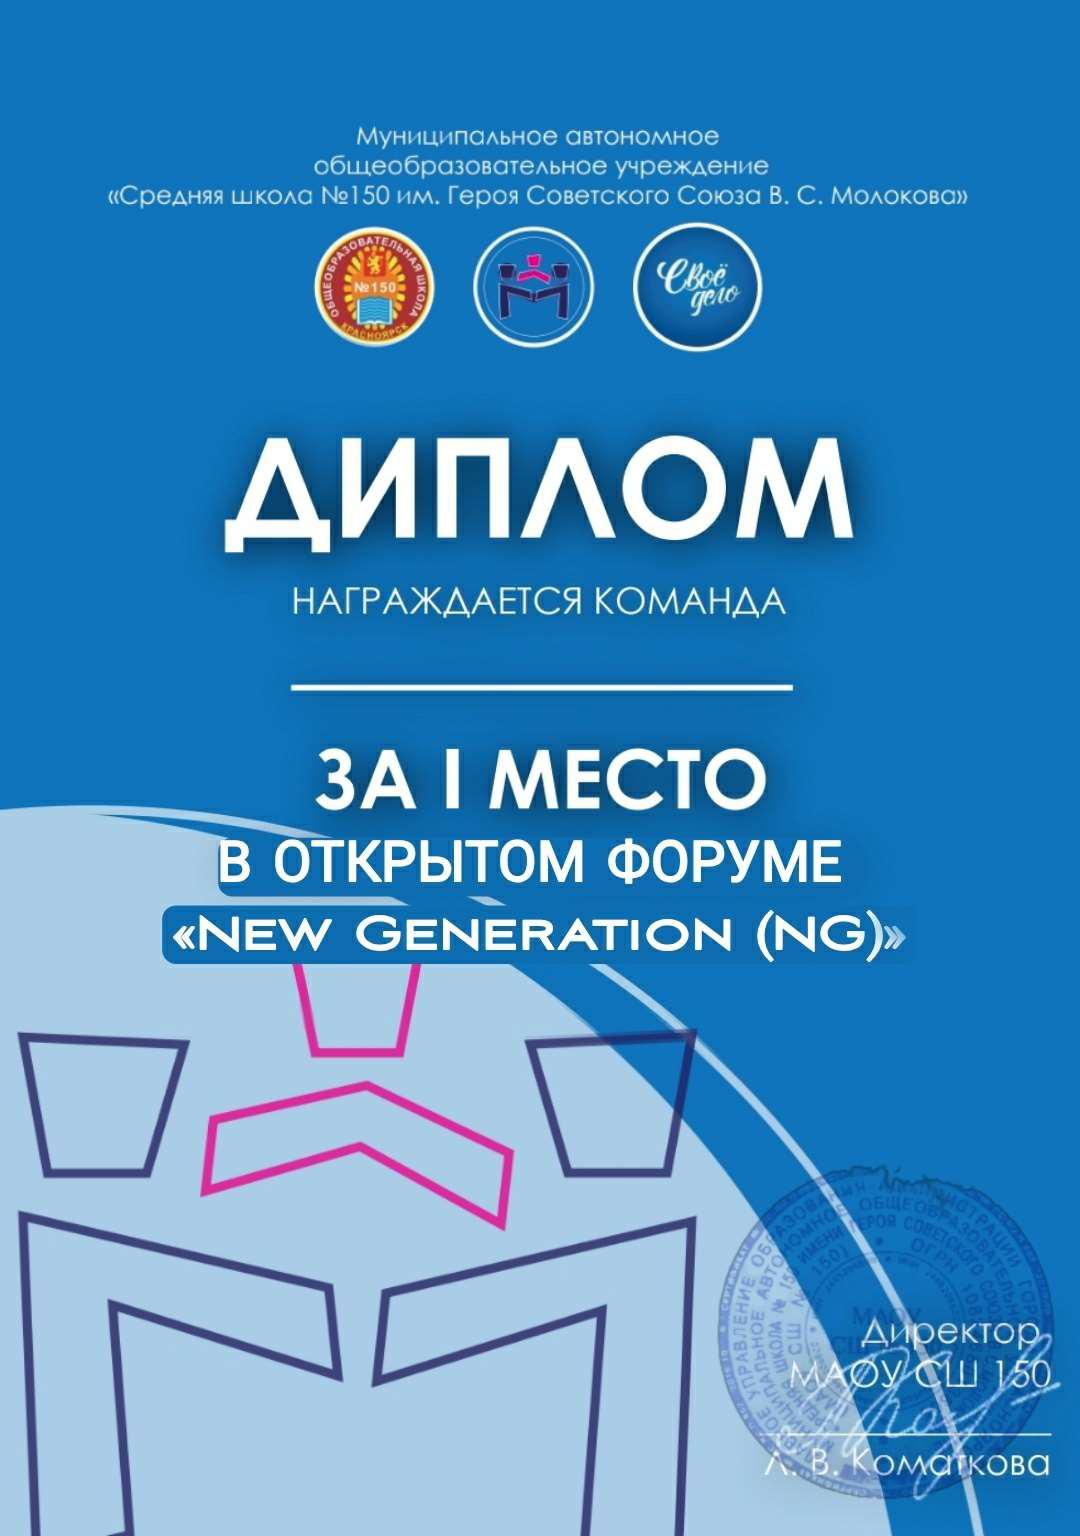 Конкурс  для школьных служб медиации/примирения «Медиация New Generation (NG)».